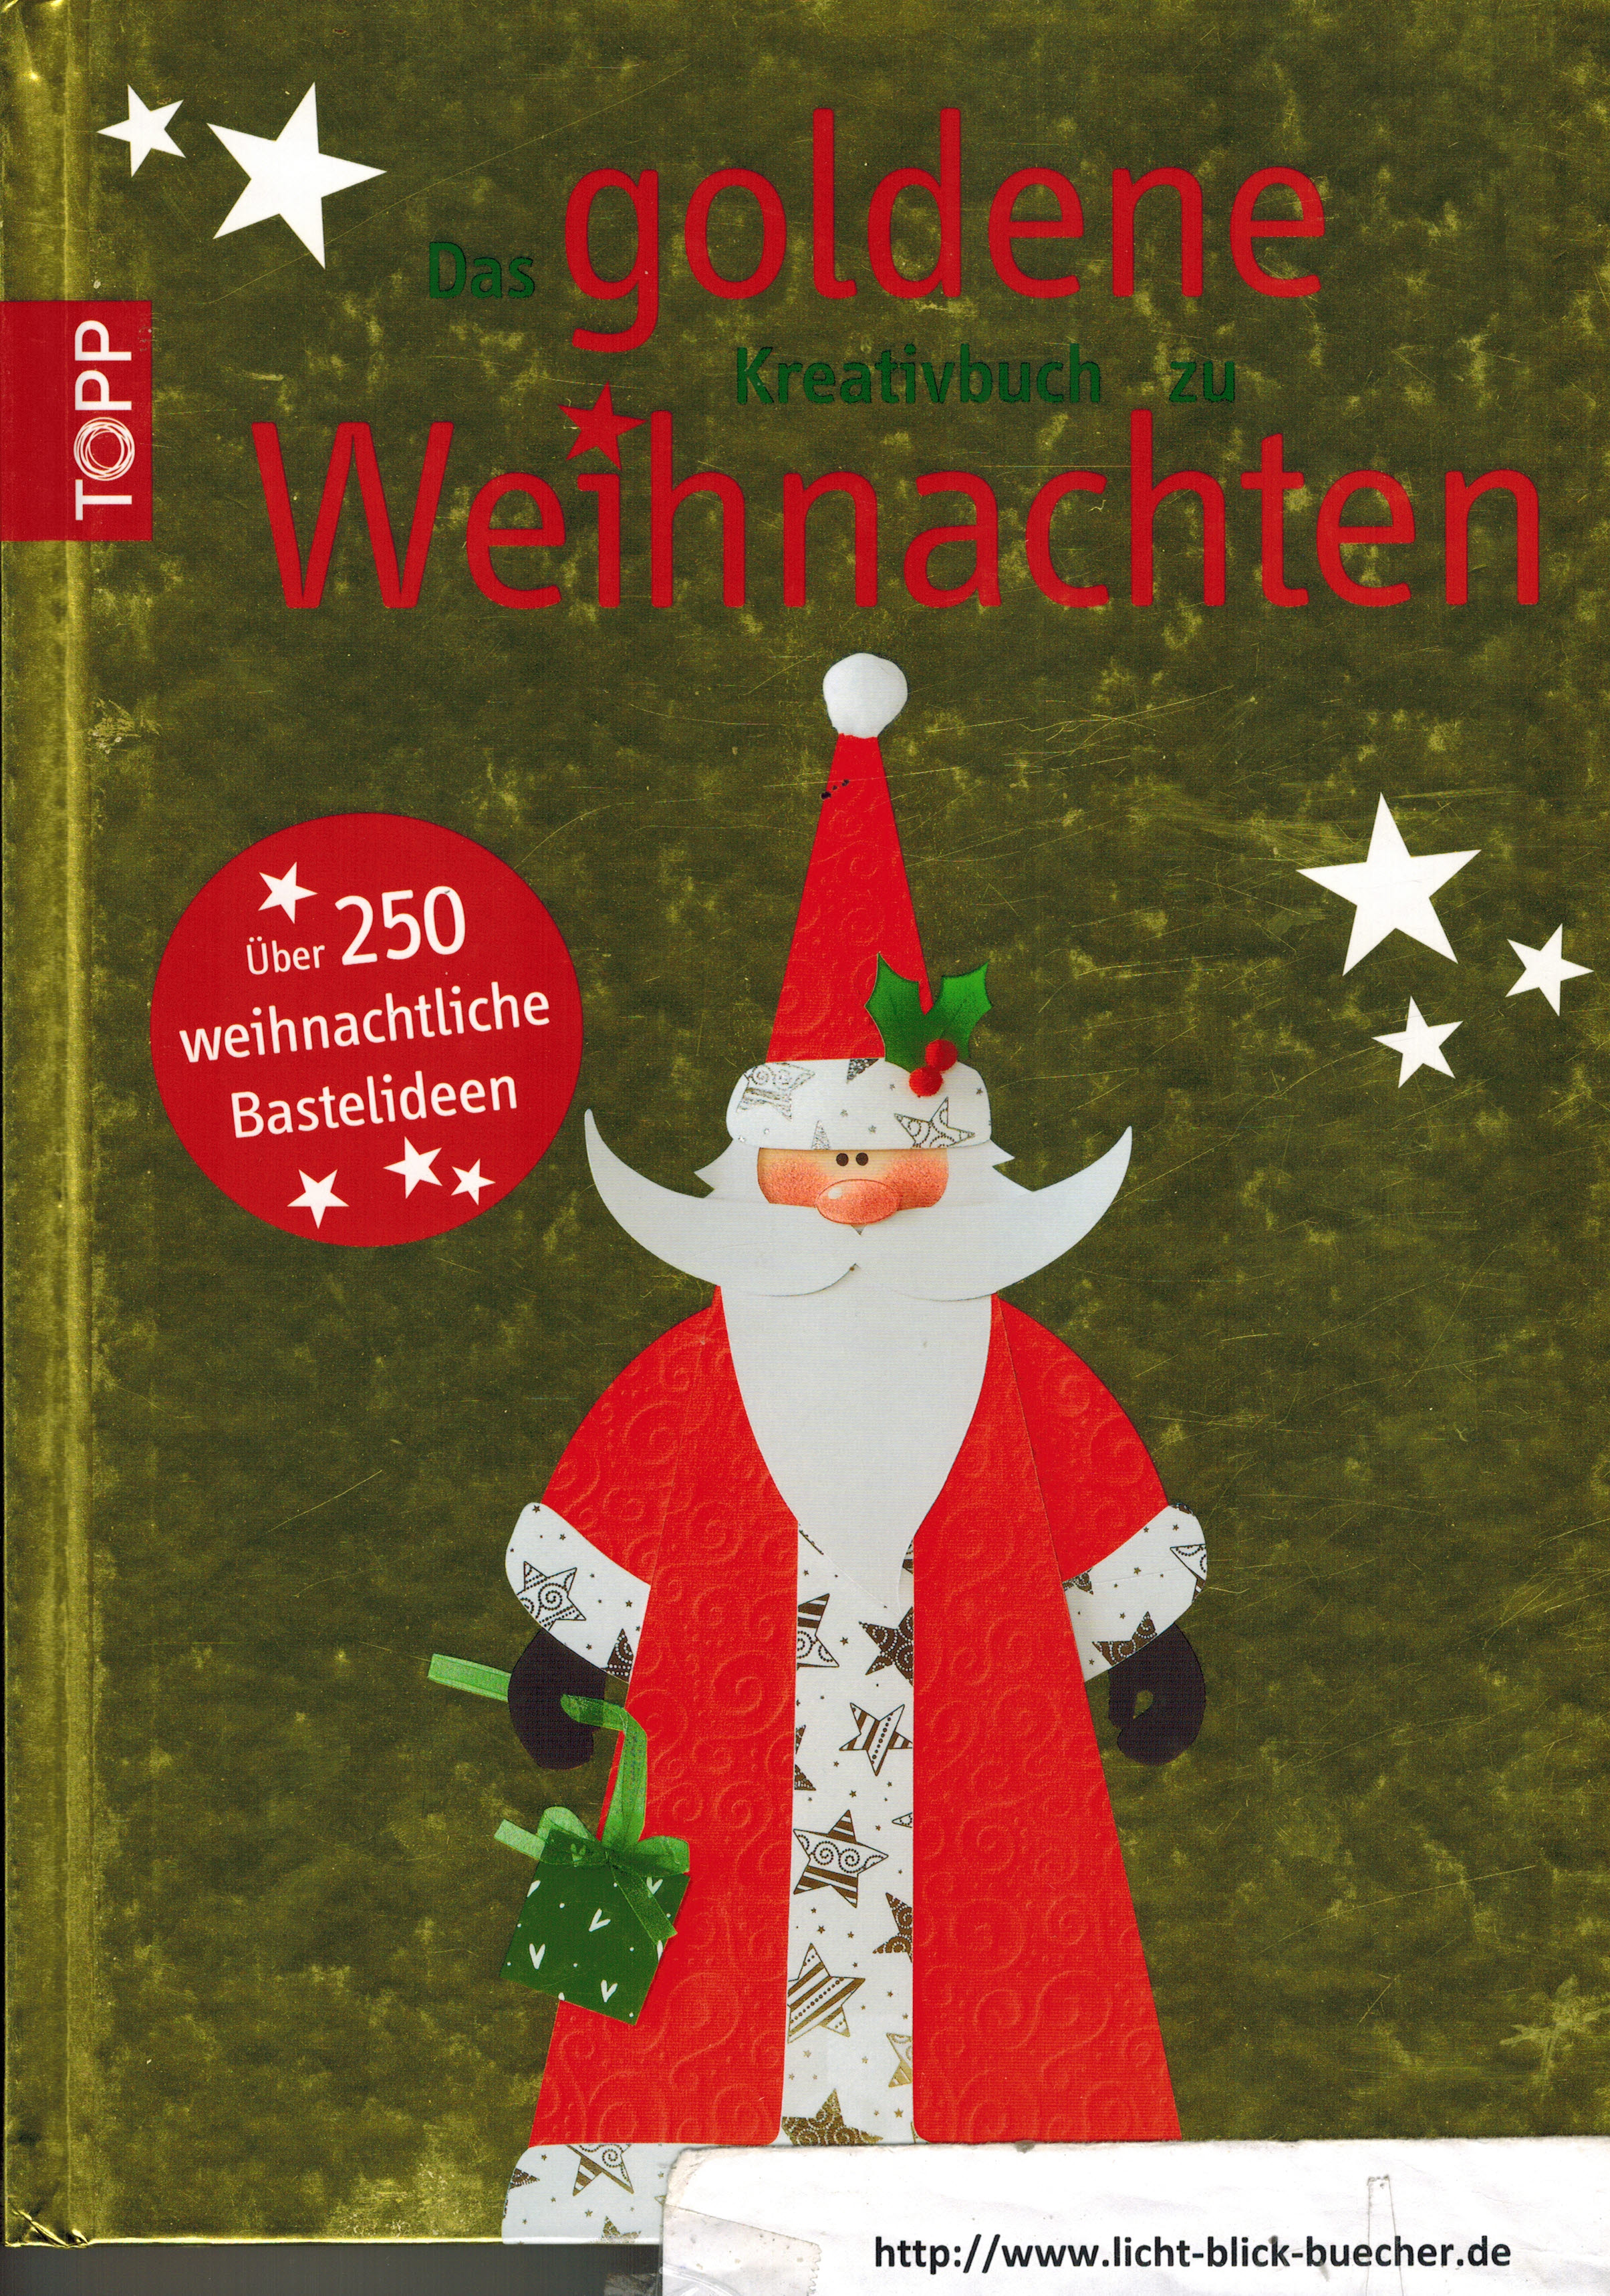 Das goldene Kreativbuch zu Weihnachten  Ueber 250 weihnachtliche Bastelideen